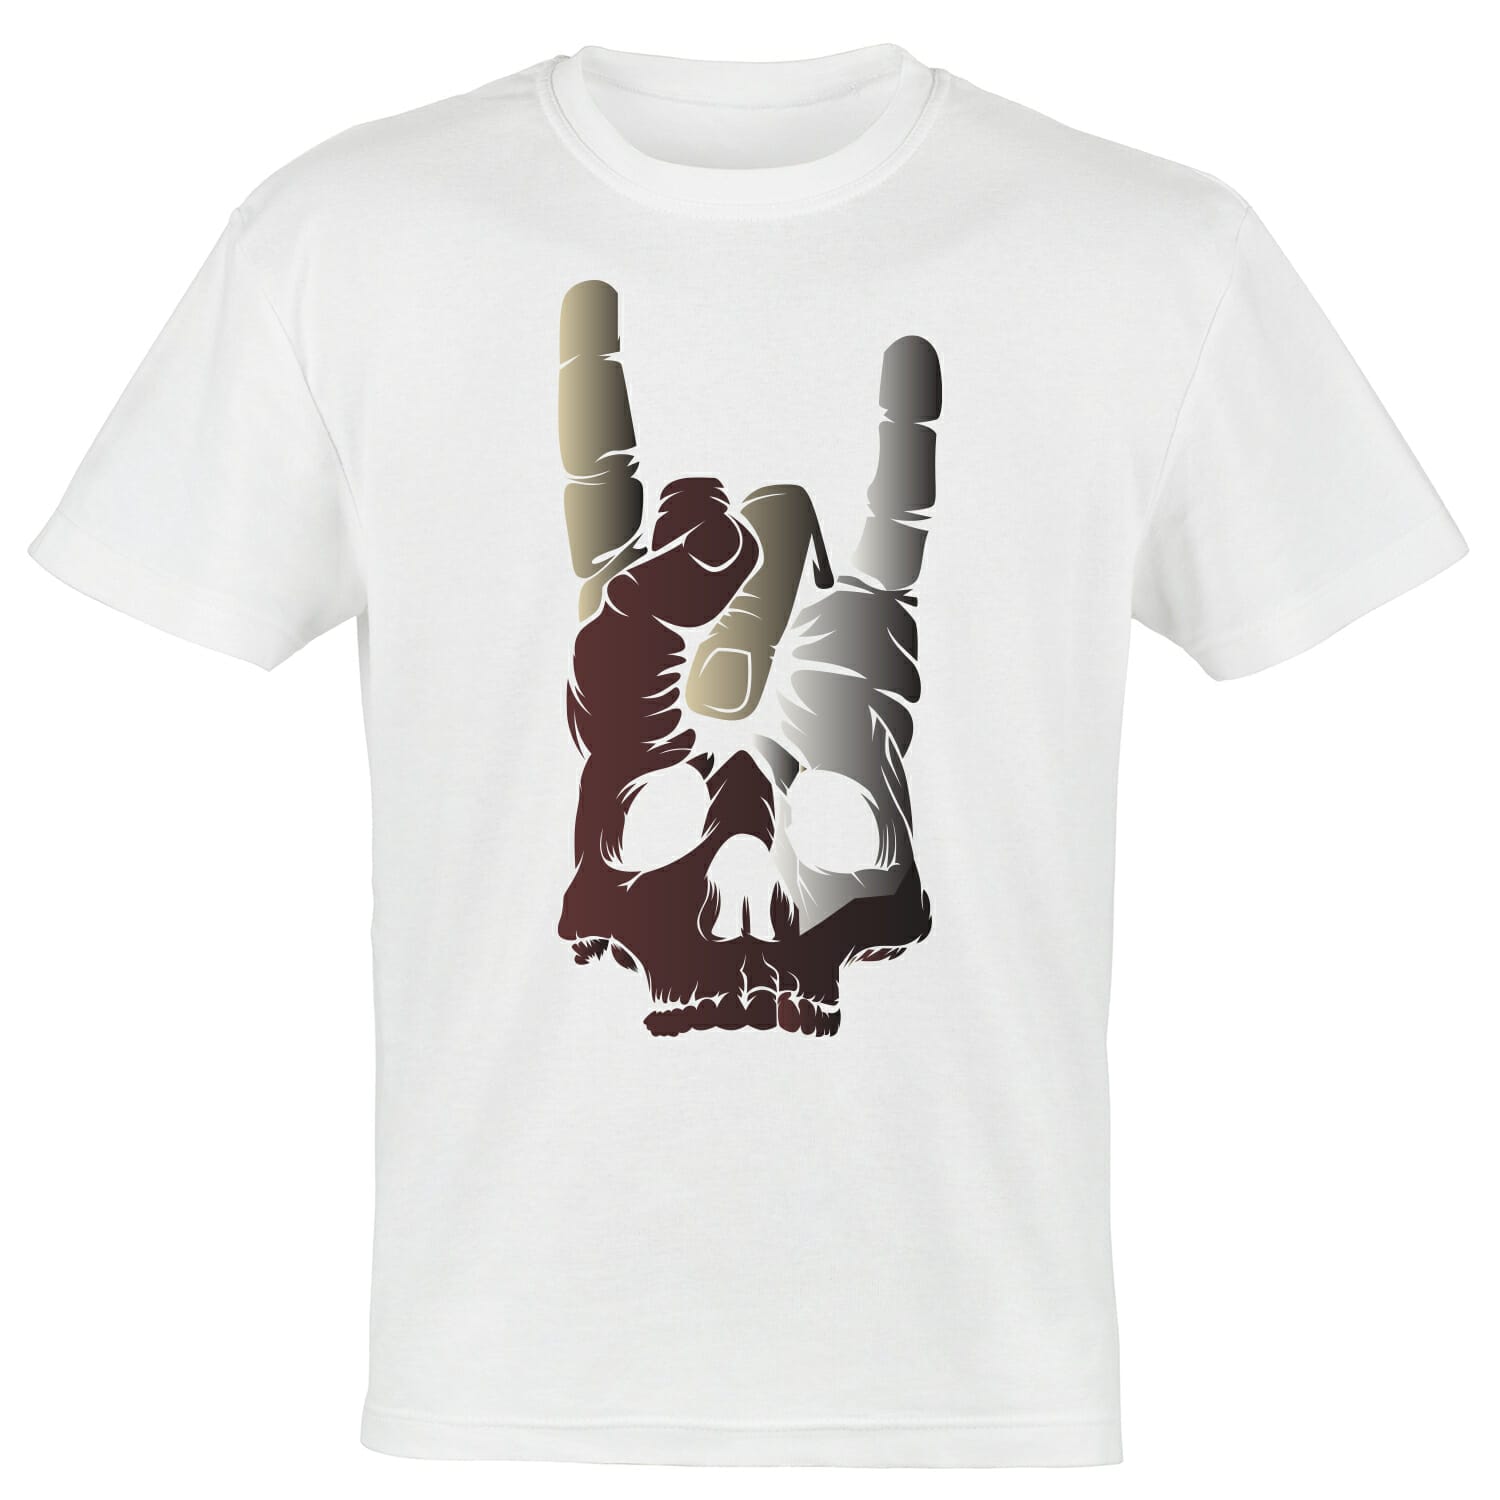 skull-rock-hand-tshirt-design